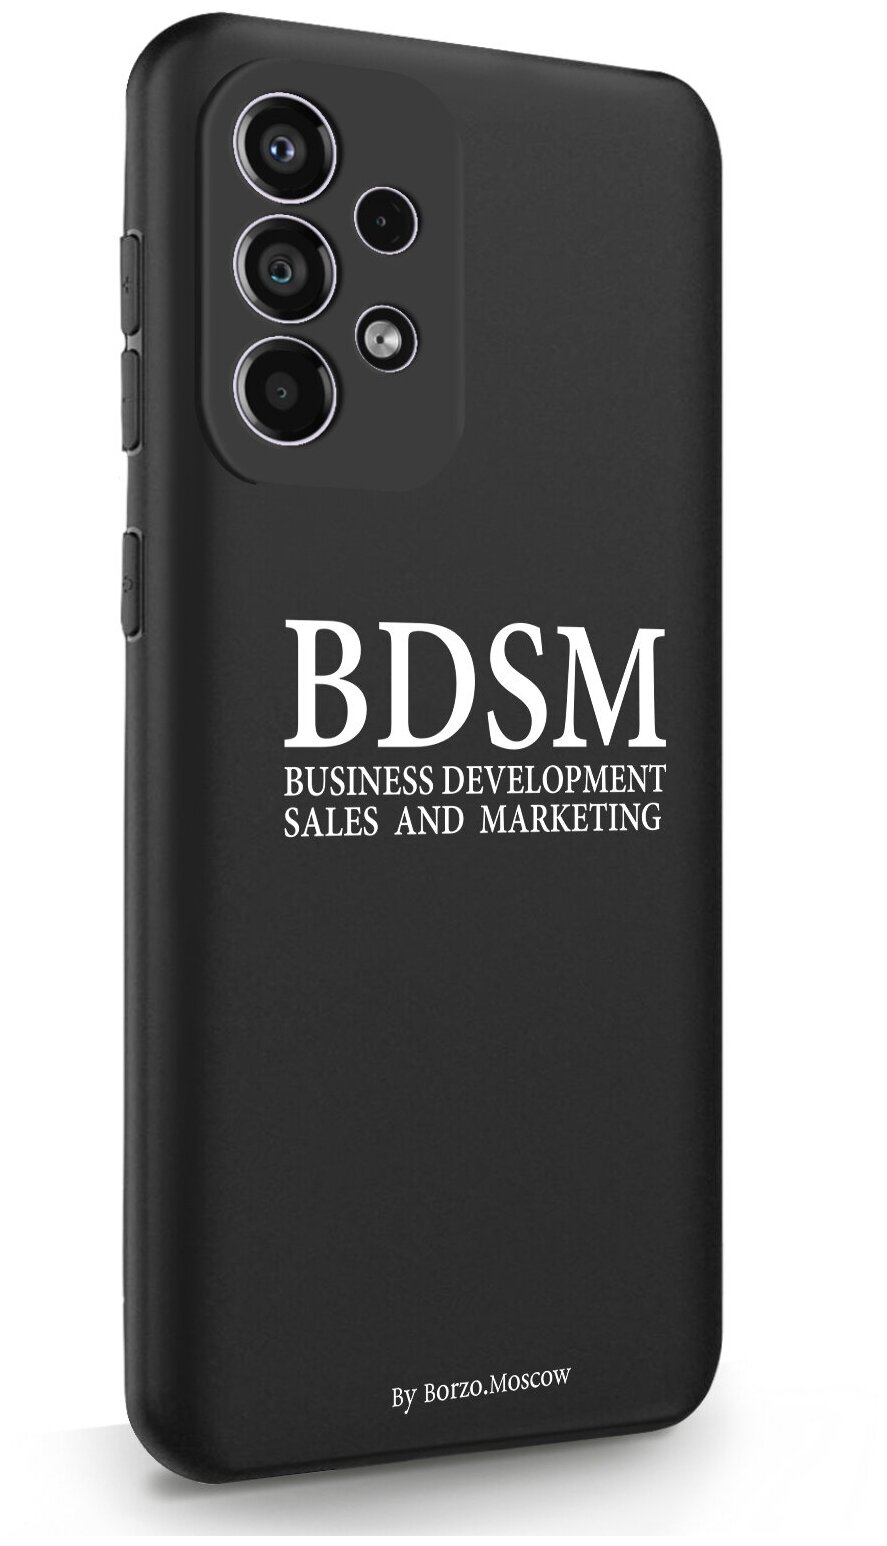 Черный силиконовый чехол Borzo.Moscow для Samsung Galaxy A33 BDSM (business development sales and marketing) для Самсунг Галакси А33